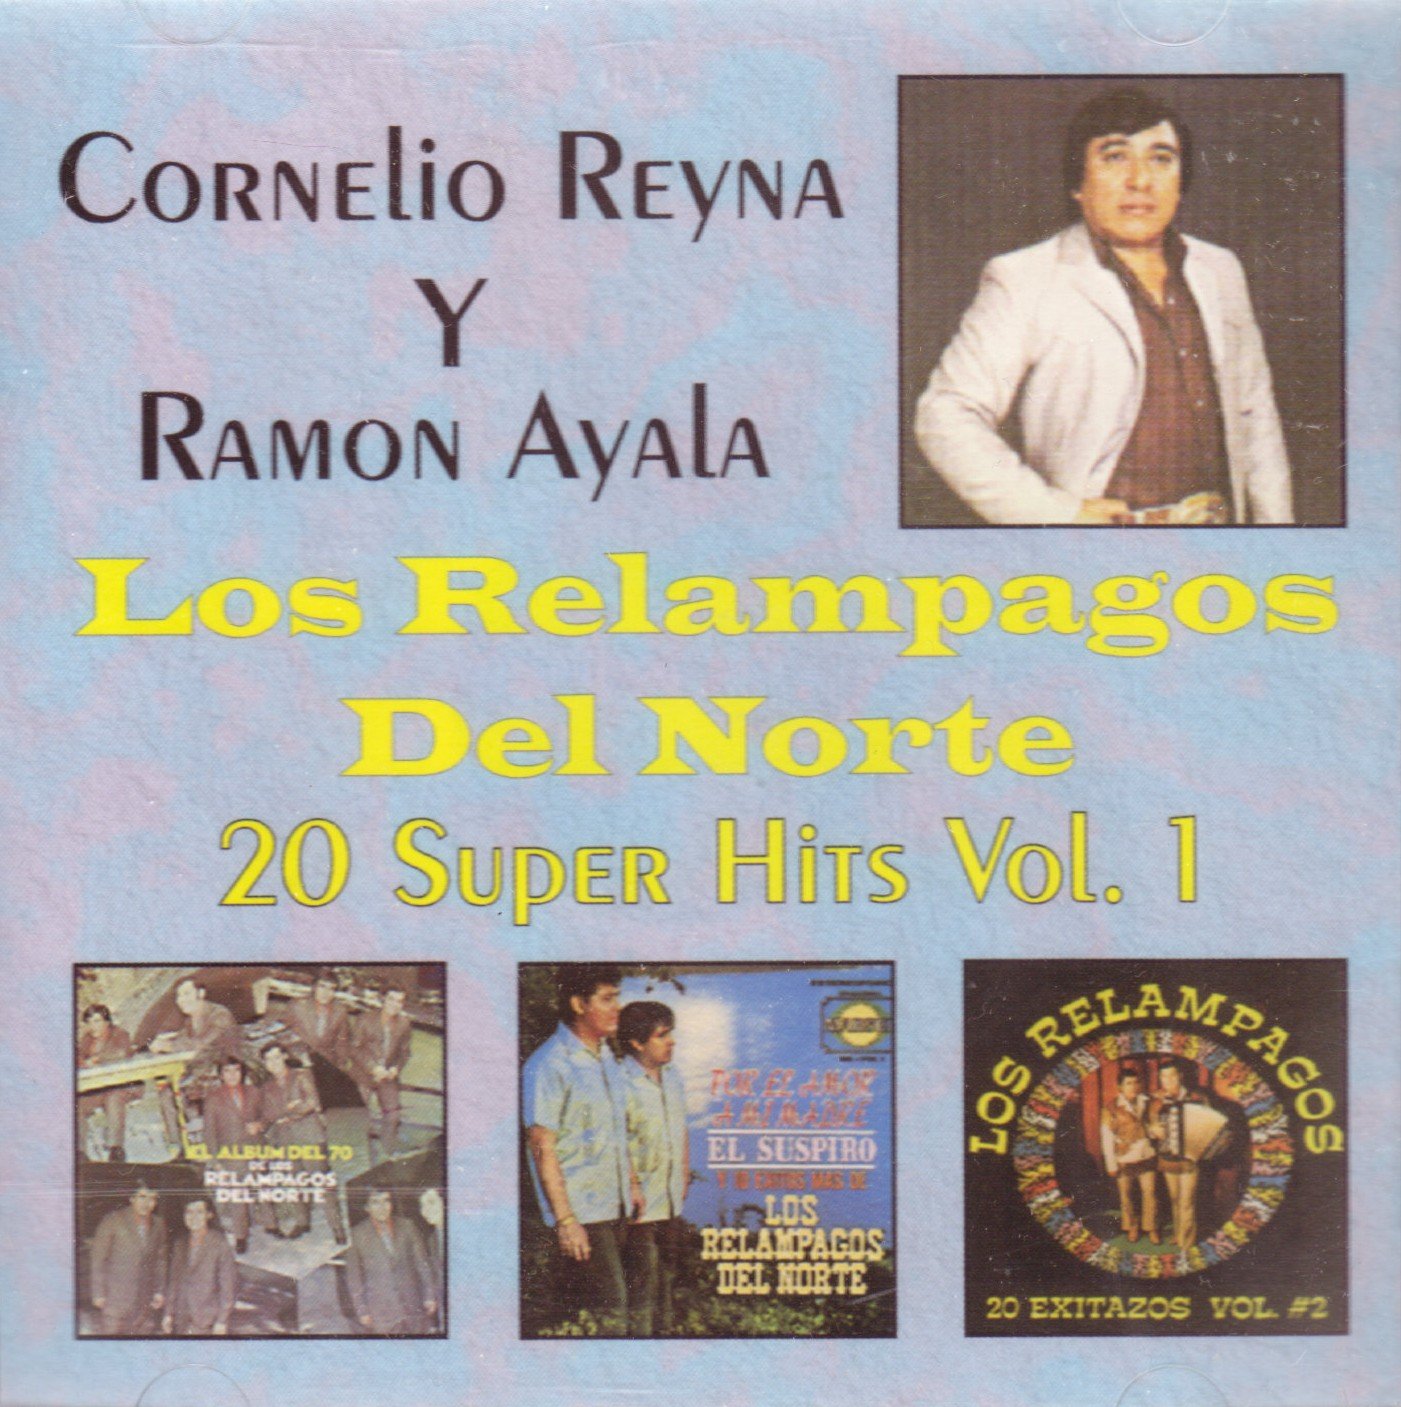 Los Relampagos Del Norte | Cornelio Reyna y Ramon Ayala - 20 Super Hits Vol. 1 (CD)